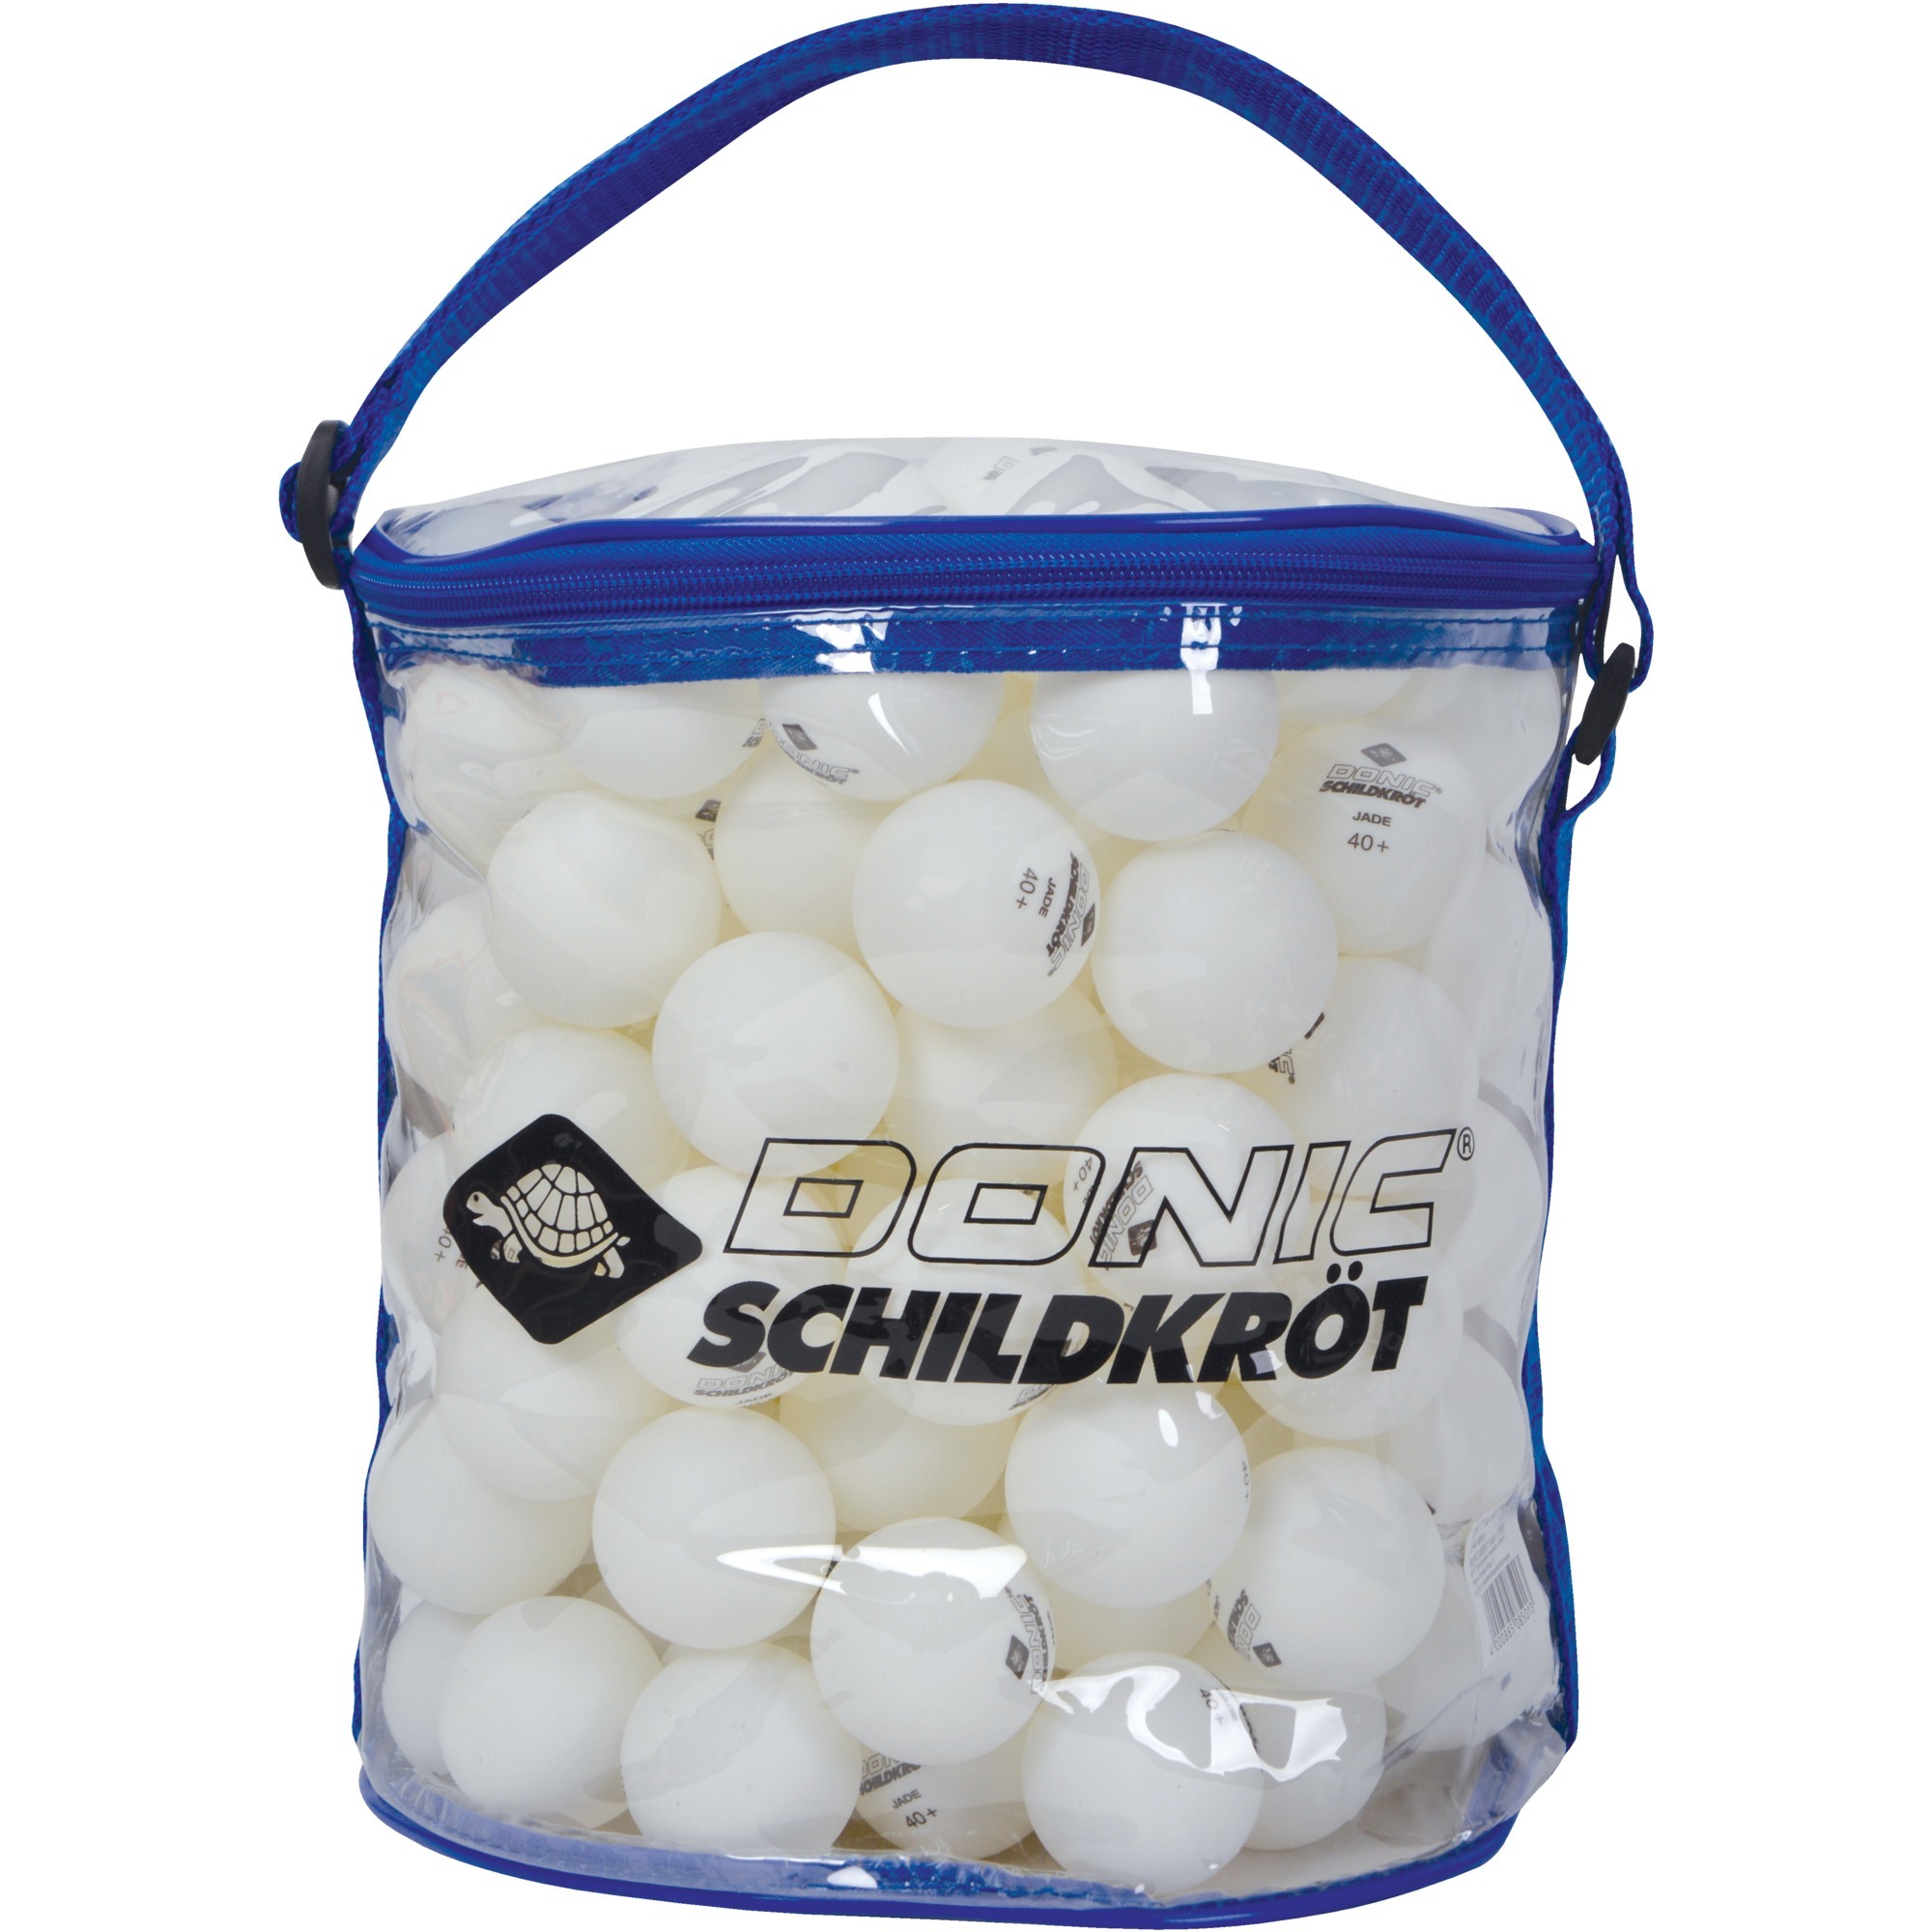 Image of Alternate - Tischtennisball Jade online einkaufen bei Alternate